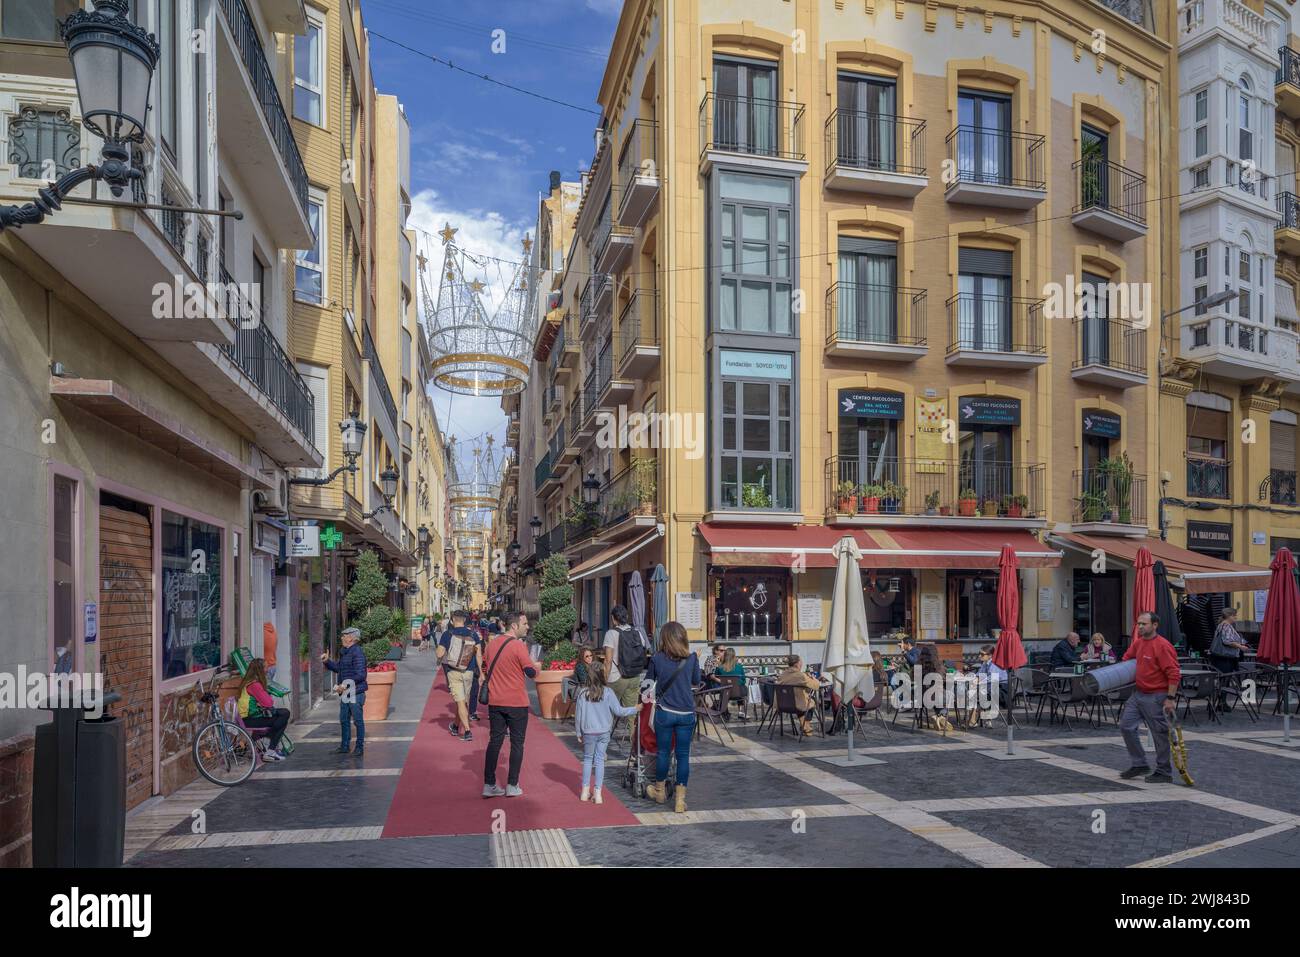 Les gens marchant sur un tapis rouge sur le sol de la rue Trapper pleine de boutiques et de décorations de Noël dans la capitale de la région de Murcie, en Espagne. Banque D'Images